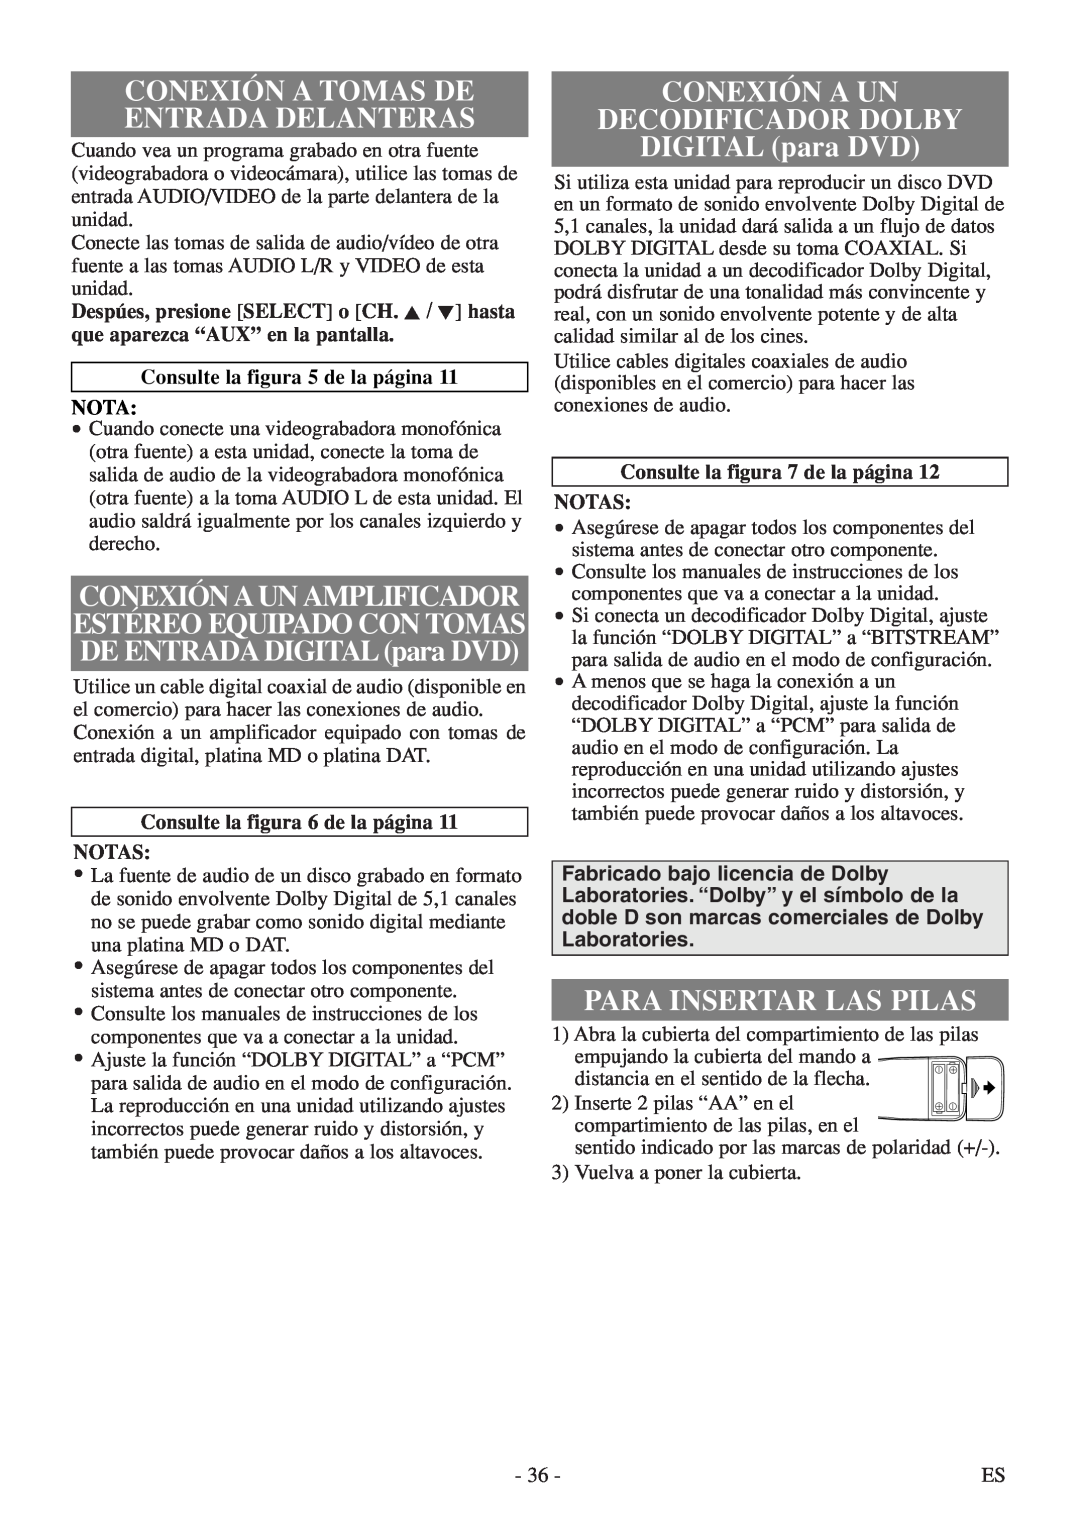 FUNAI MSD520FF owner manual CONEXIÓN A UN DECODIFICADOR DOLBY DIGITAL para DVD, Para Insertar Las Pilas 